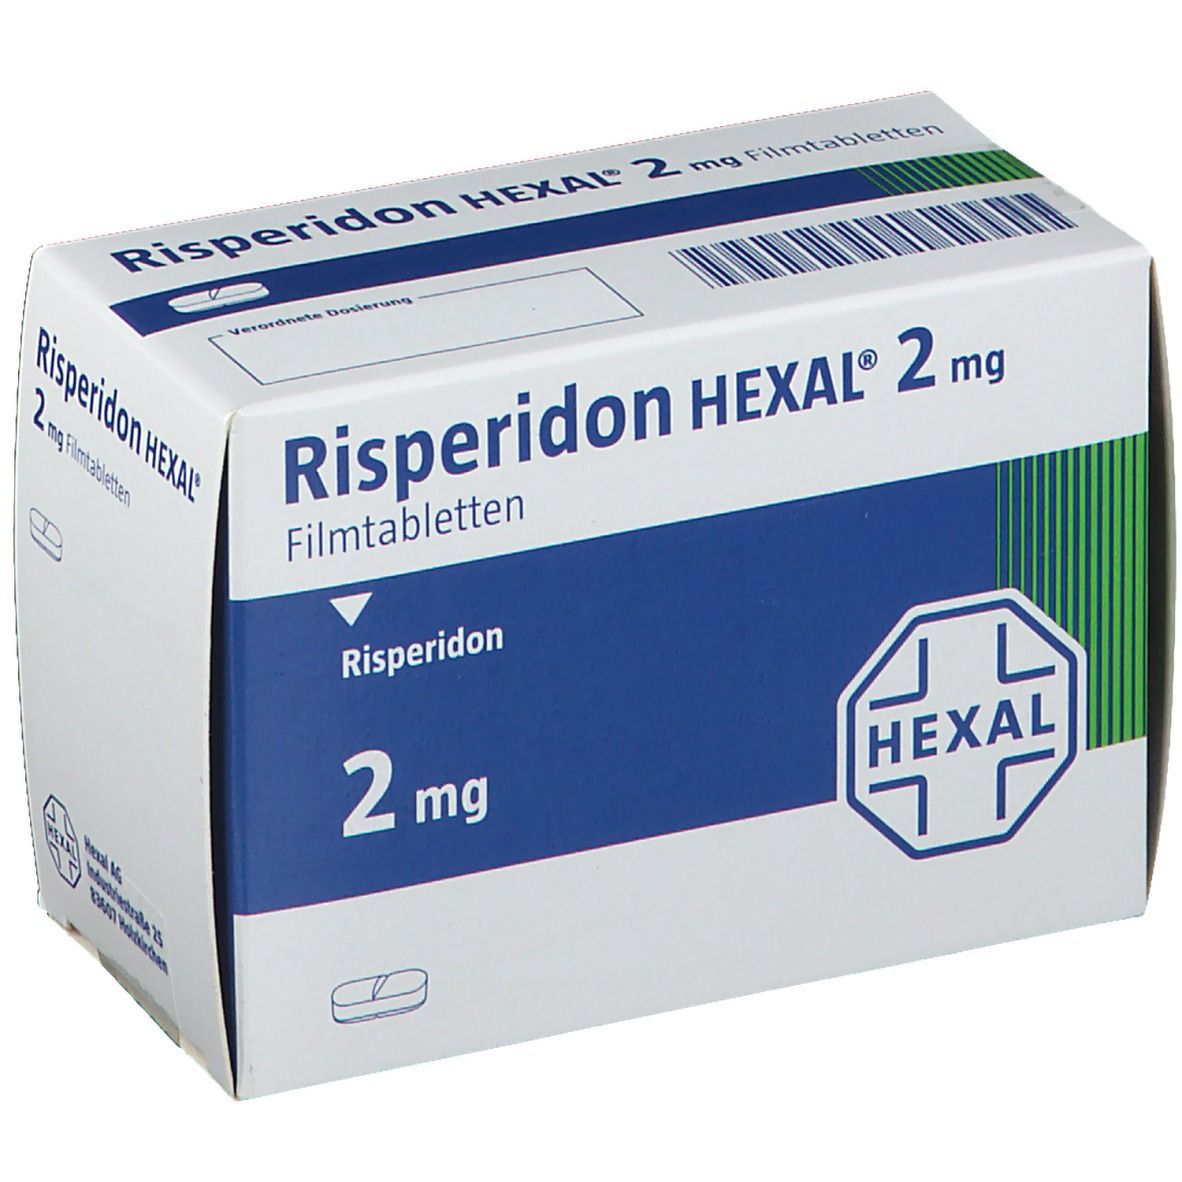 Risperidon HEXAL® 2 mg